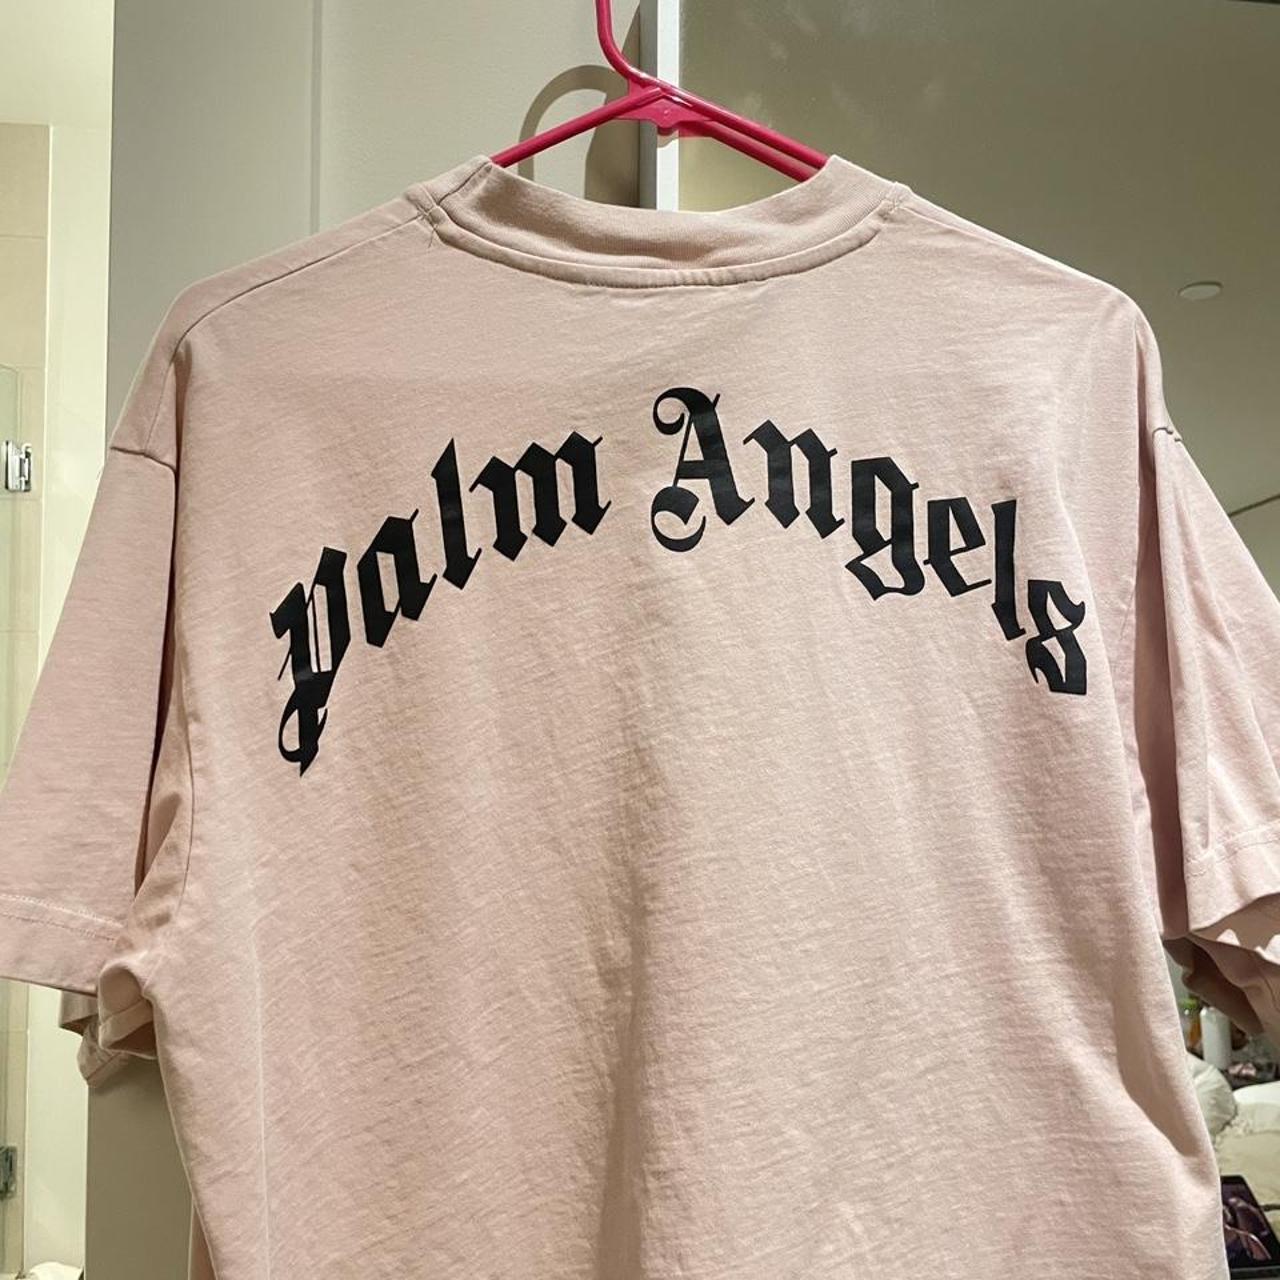 Palm Angels Women's Pink T-shirt (2)